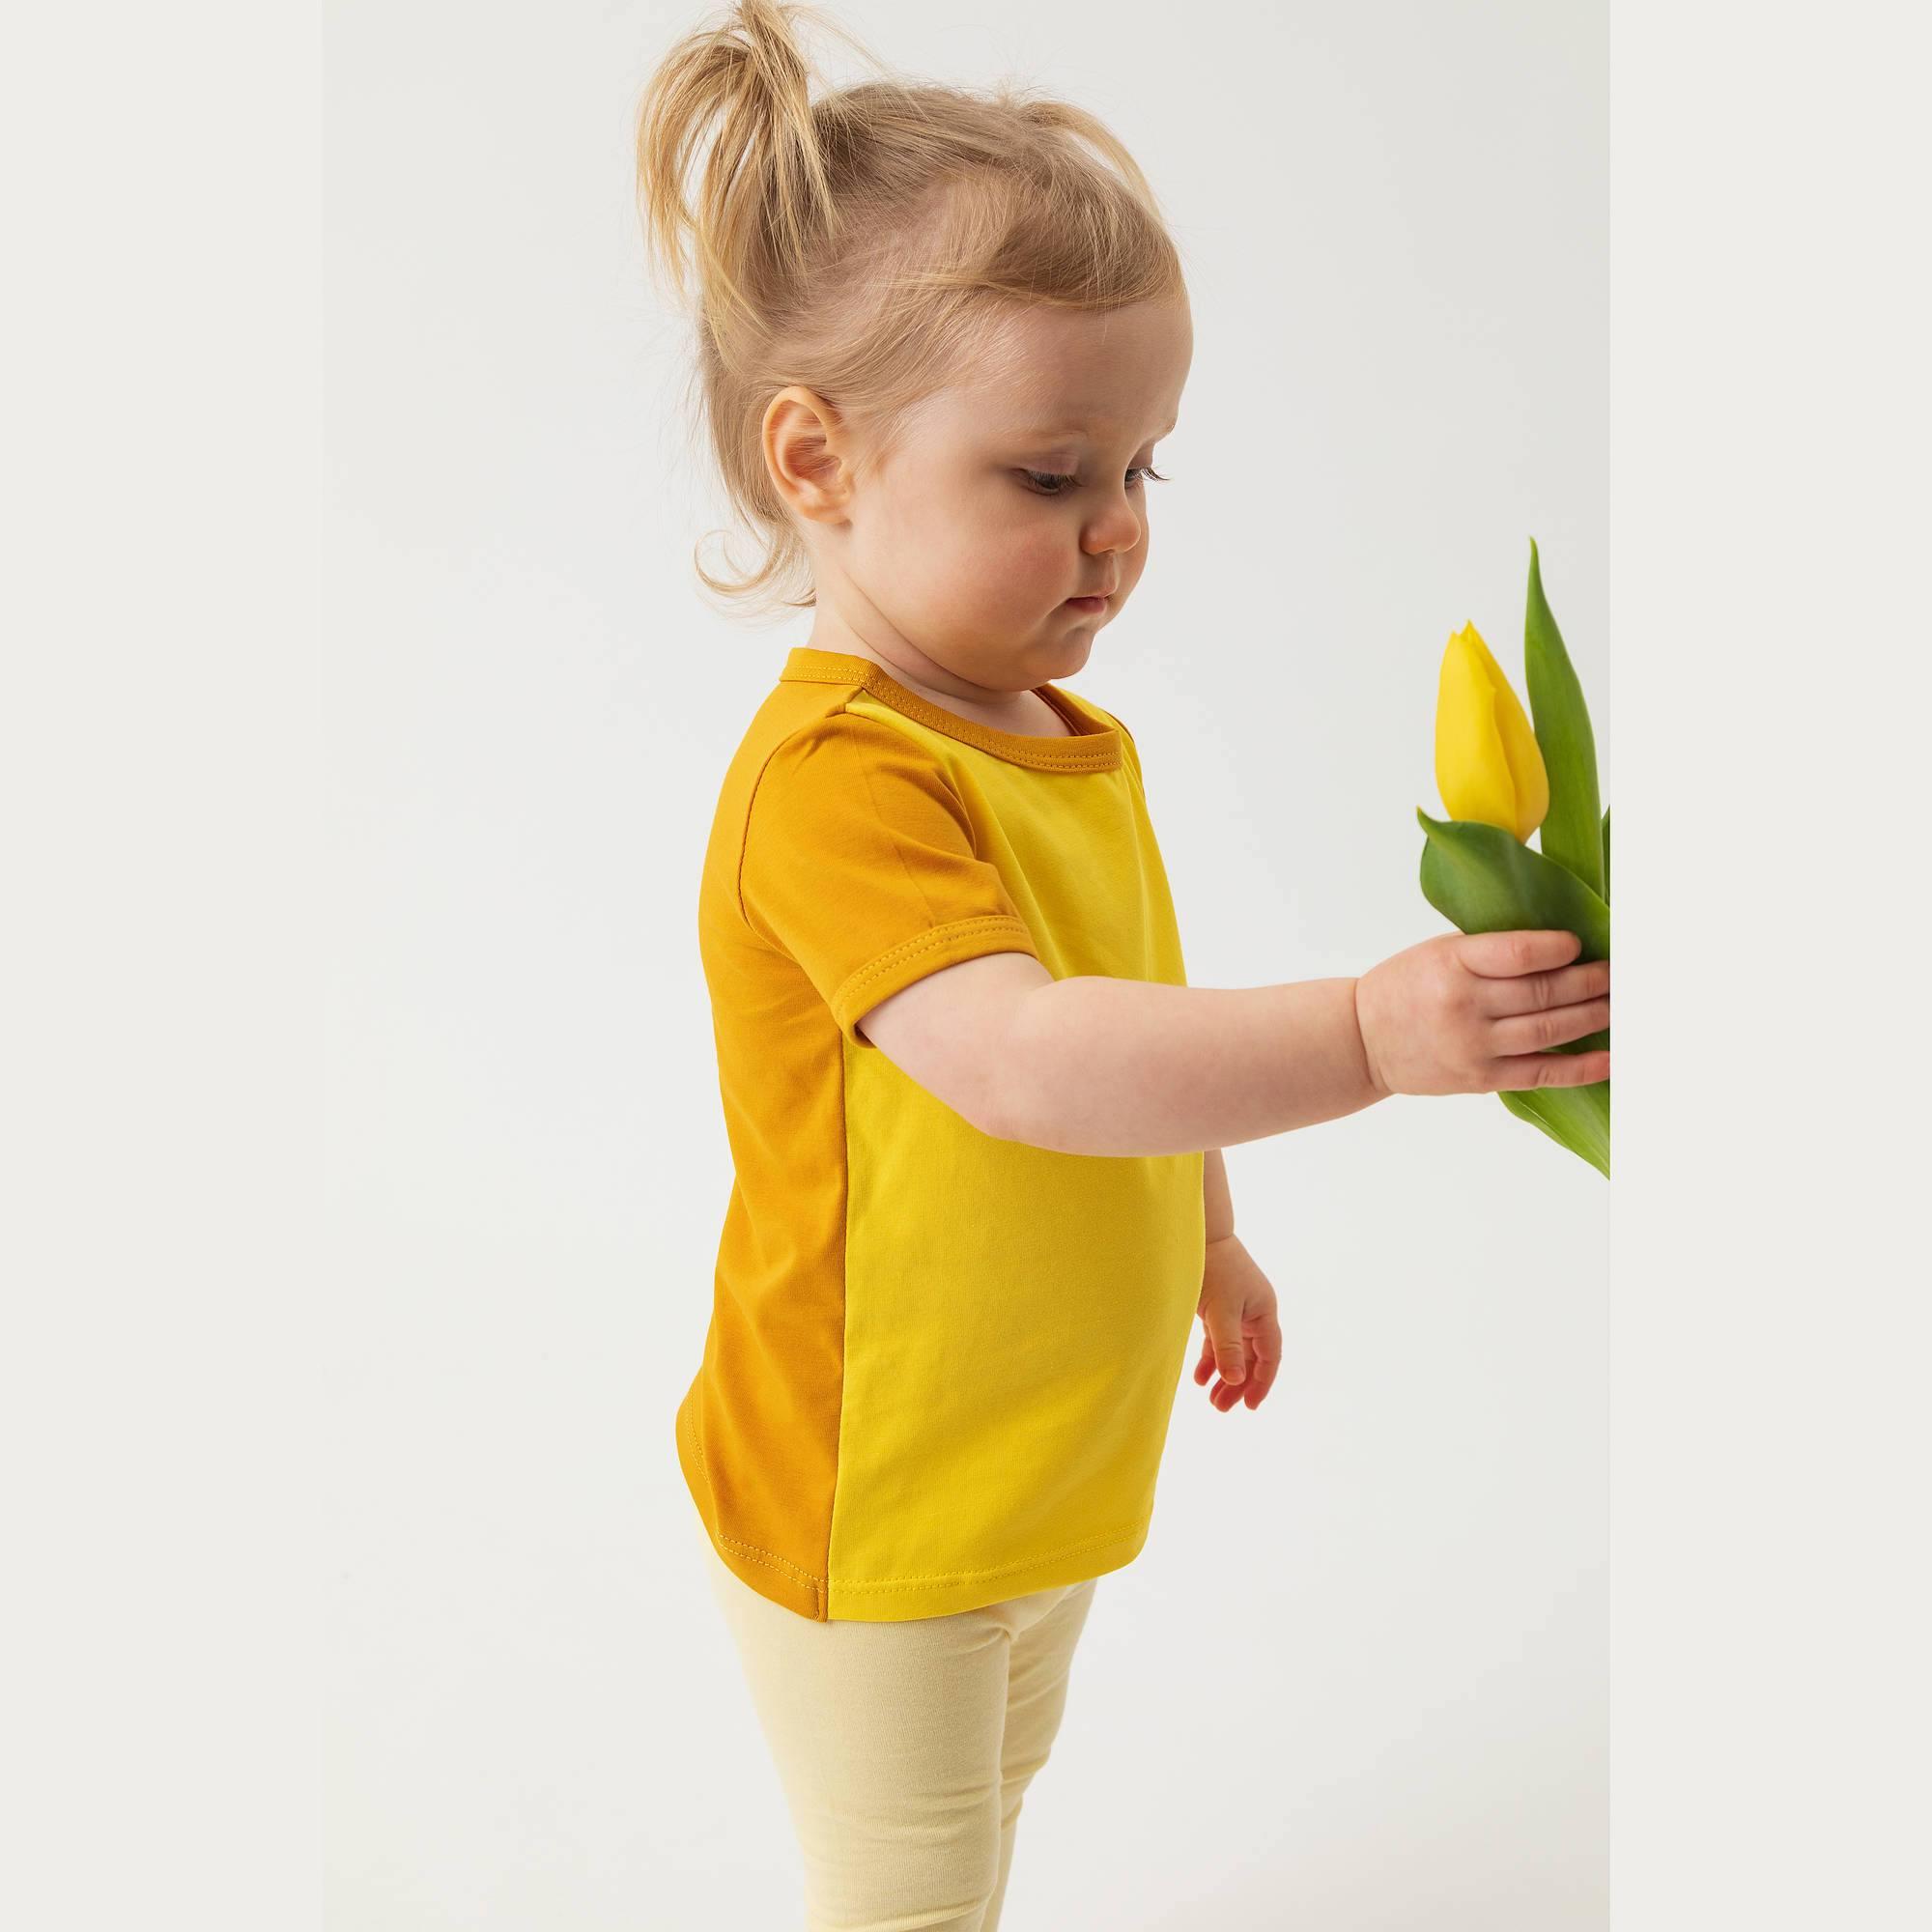 Żółto-musztardowa koszulka dwukolorowa niemowlęca